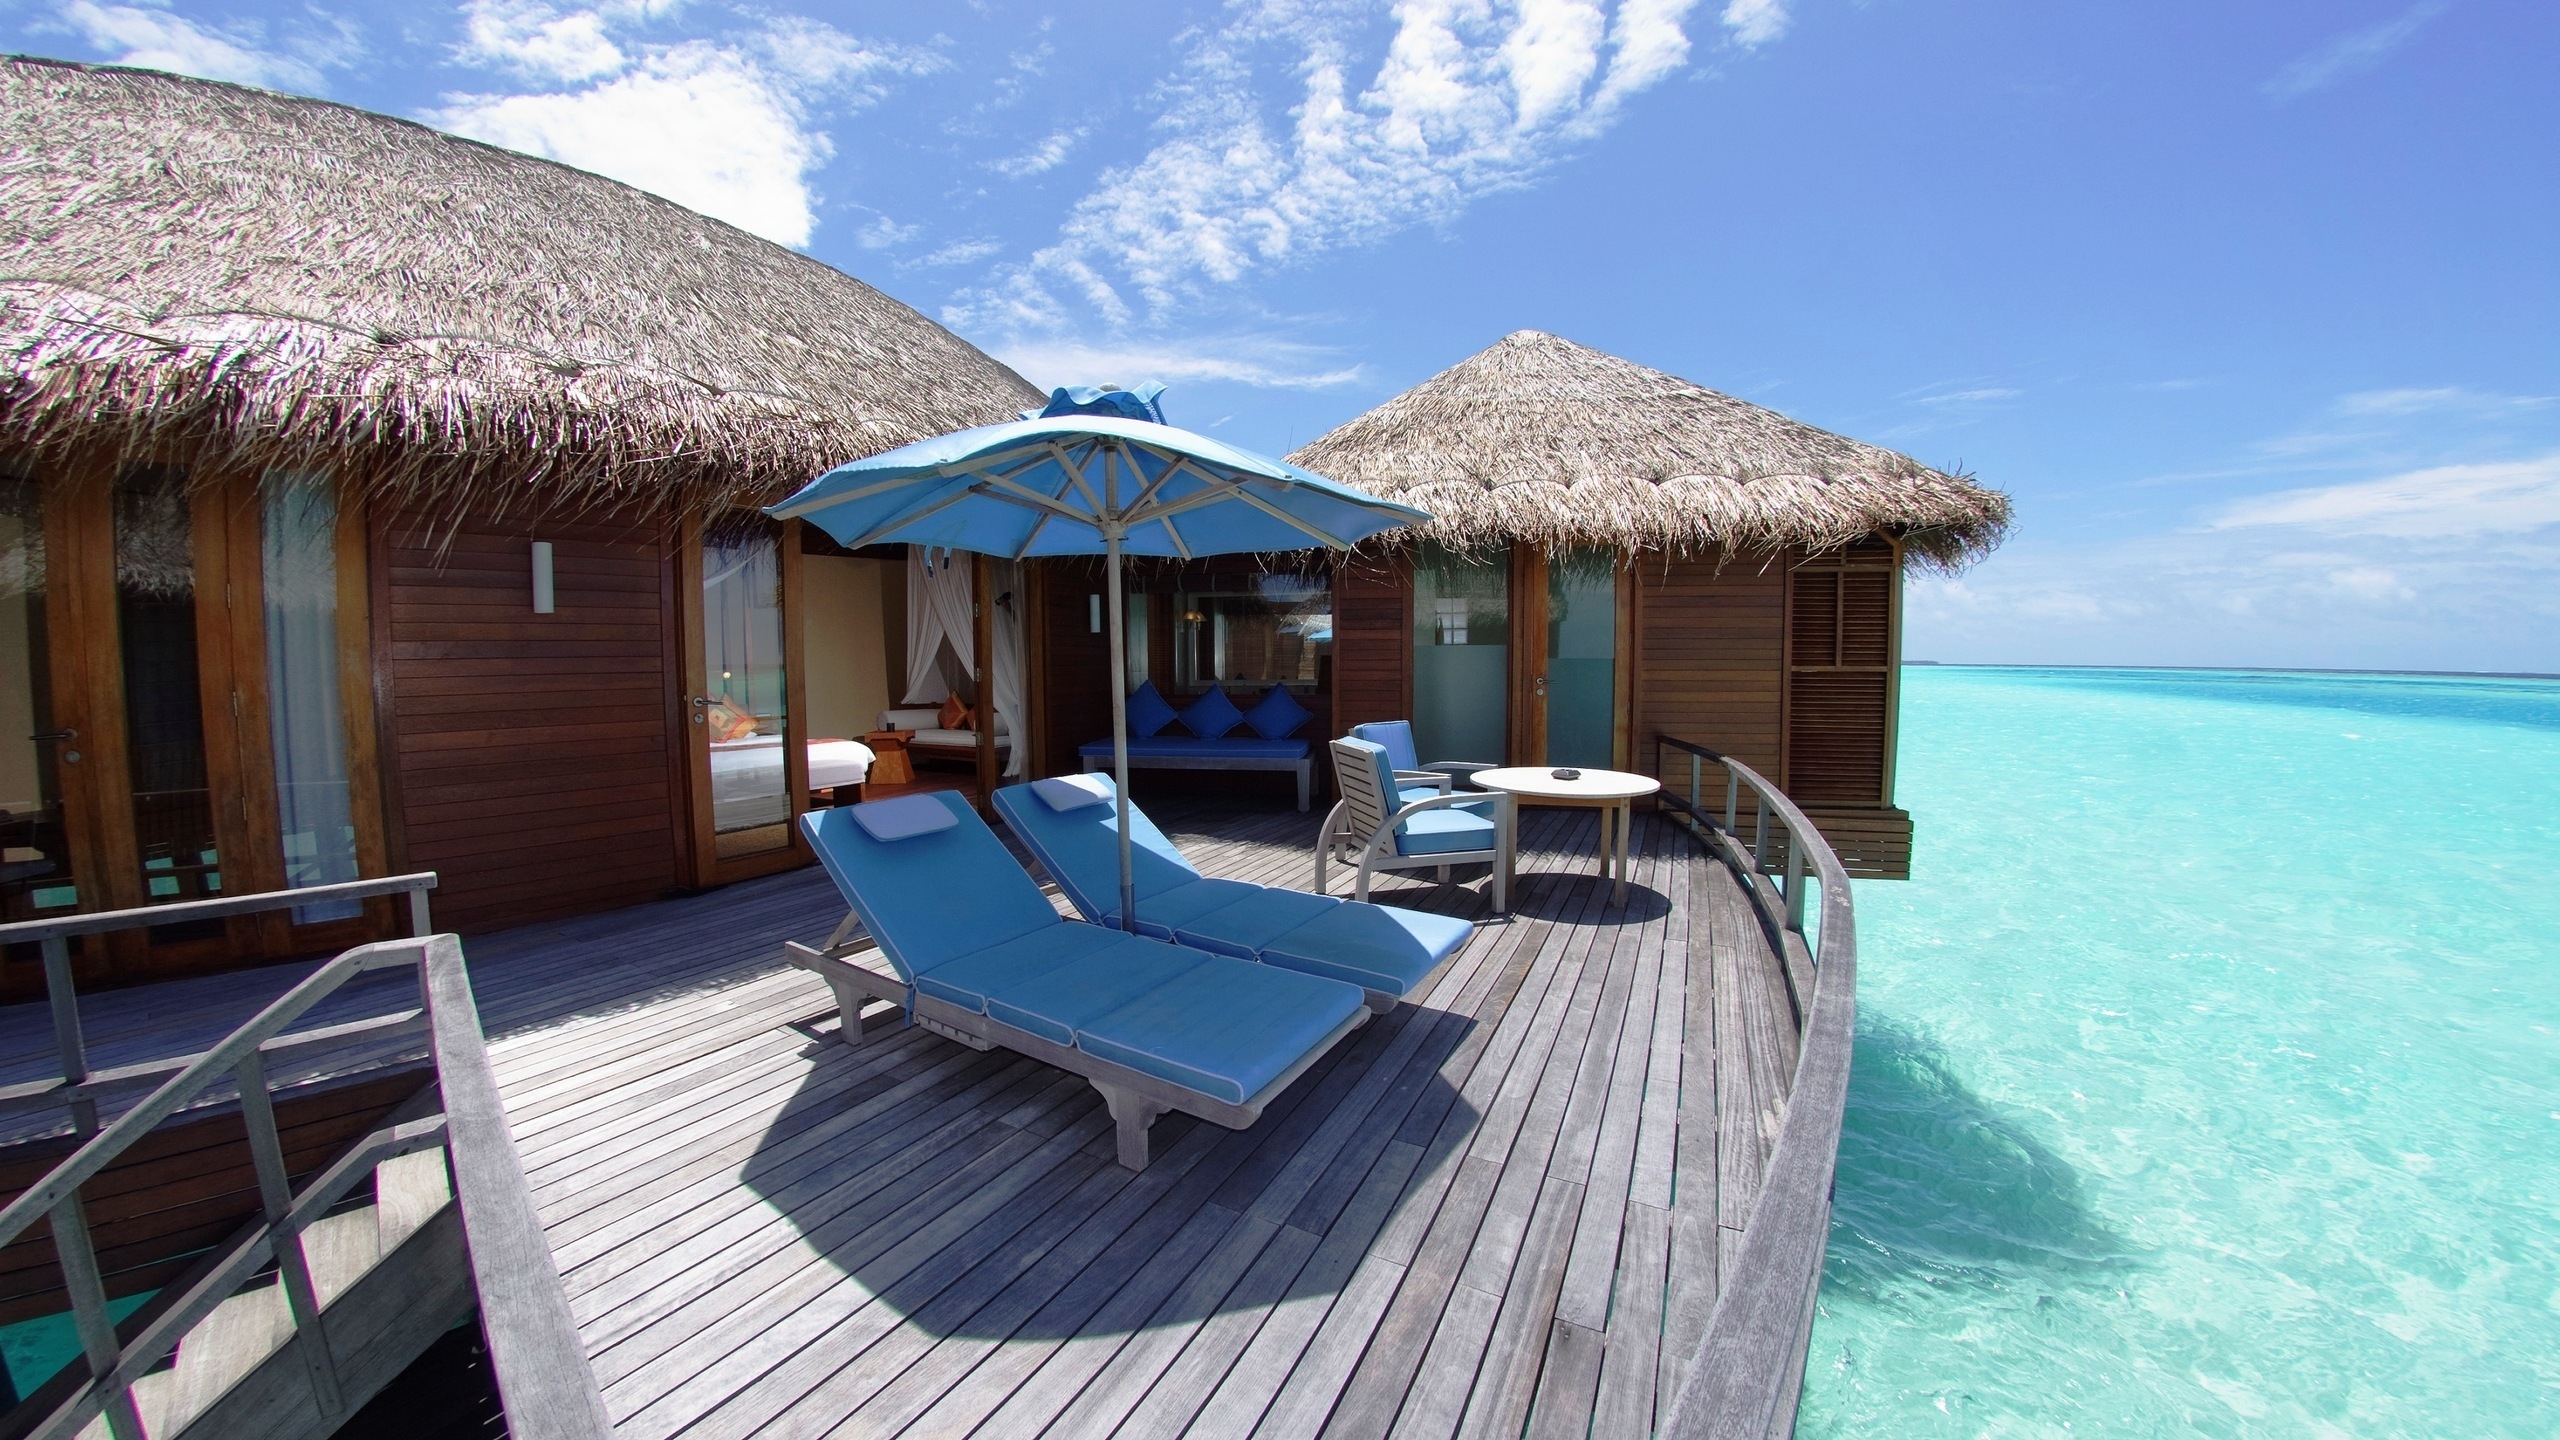 Maldives Resort for 2560x1440 HDTV resolution